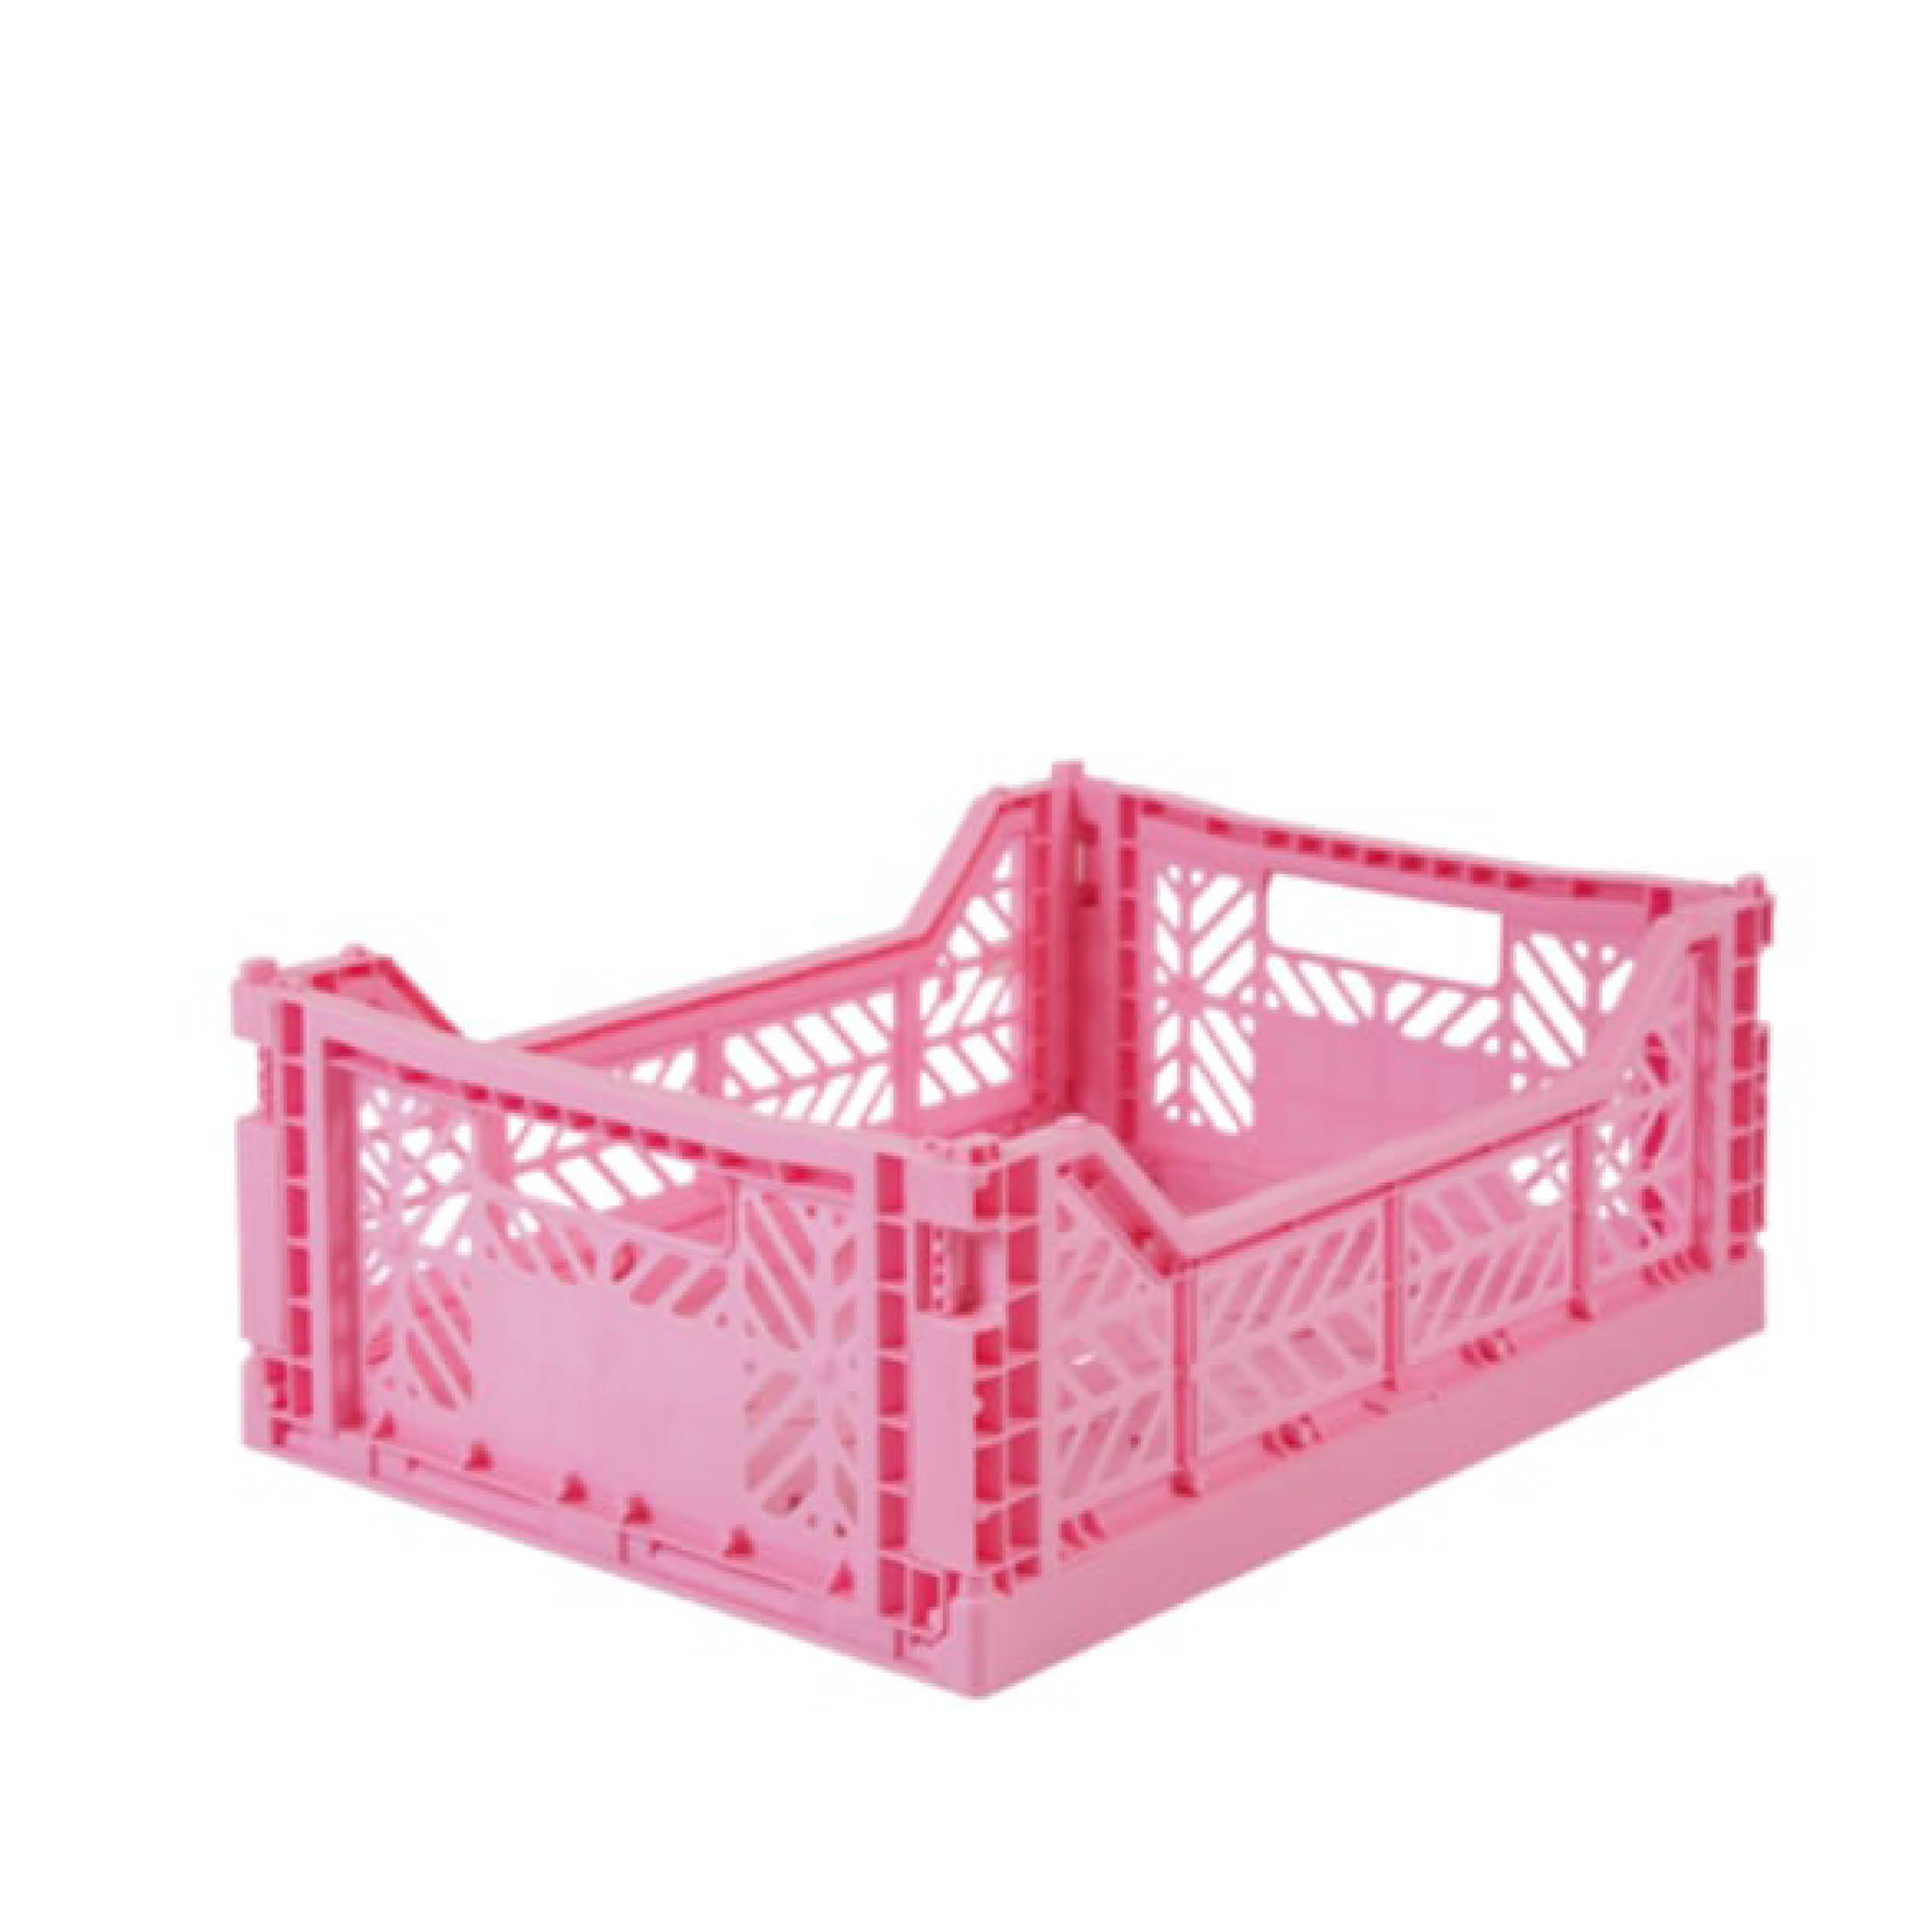 Organisation Klappbox Klappkiste in baby pink von Aykasa bei kinder und konsorten concept store in düsseldorf